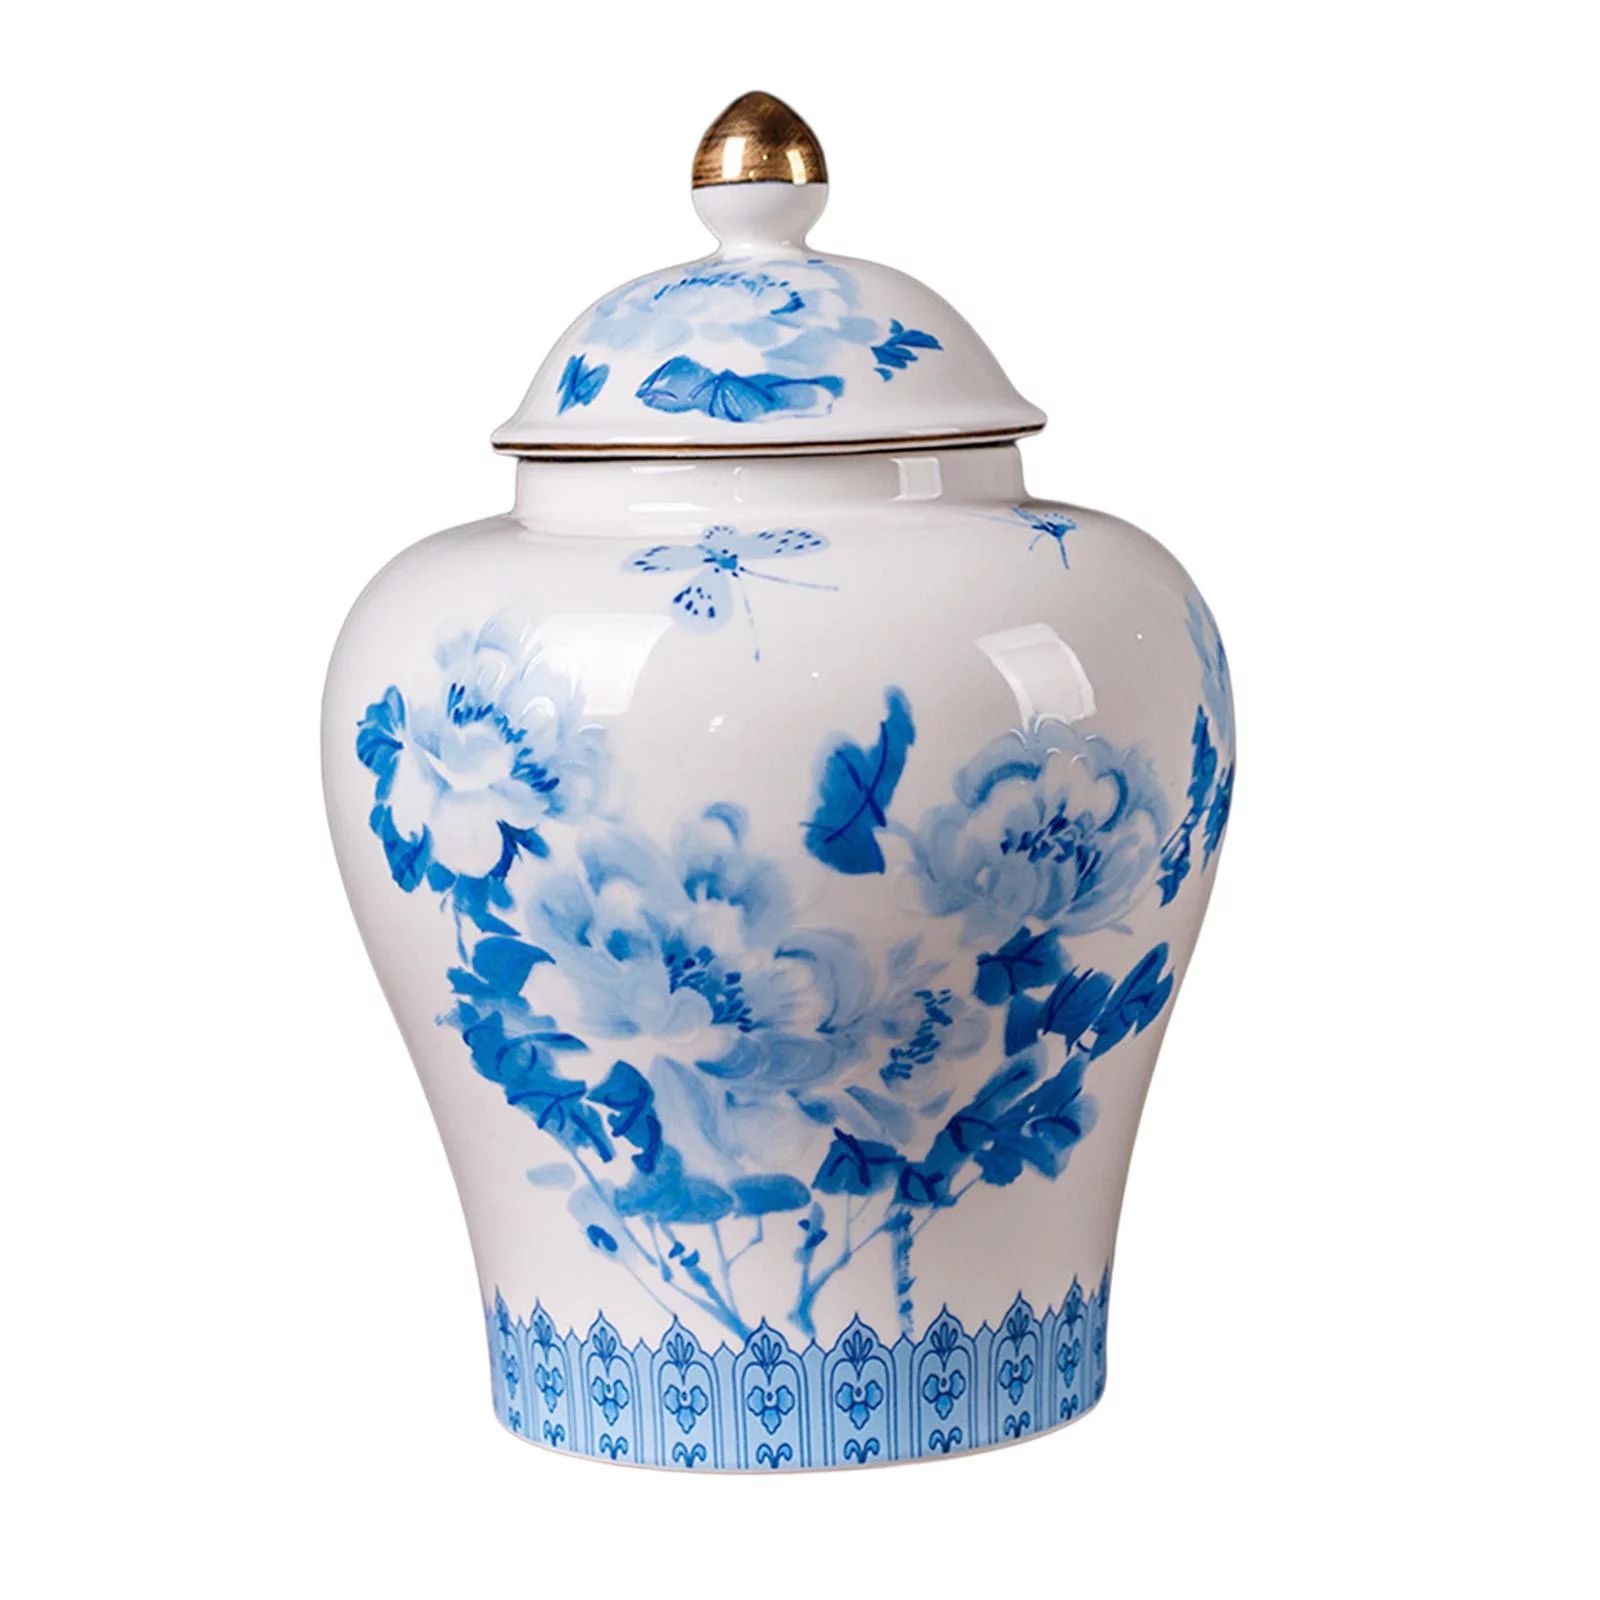 Traditional Ceramic Ginger Jar Porcelain Temple Jar with Lid Home Decor Vase | Walmart (US)